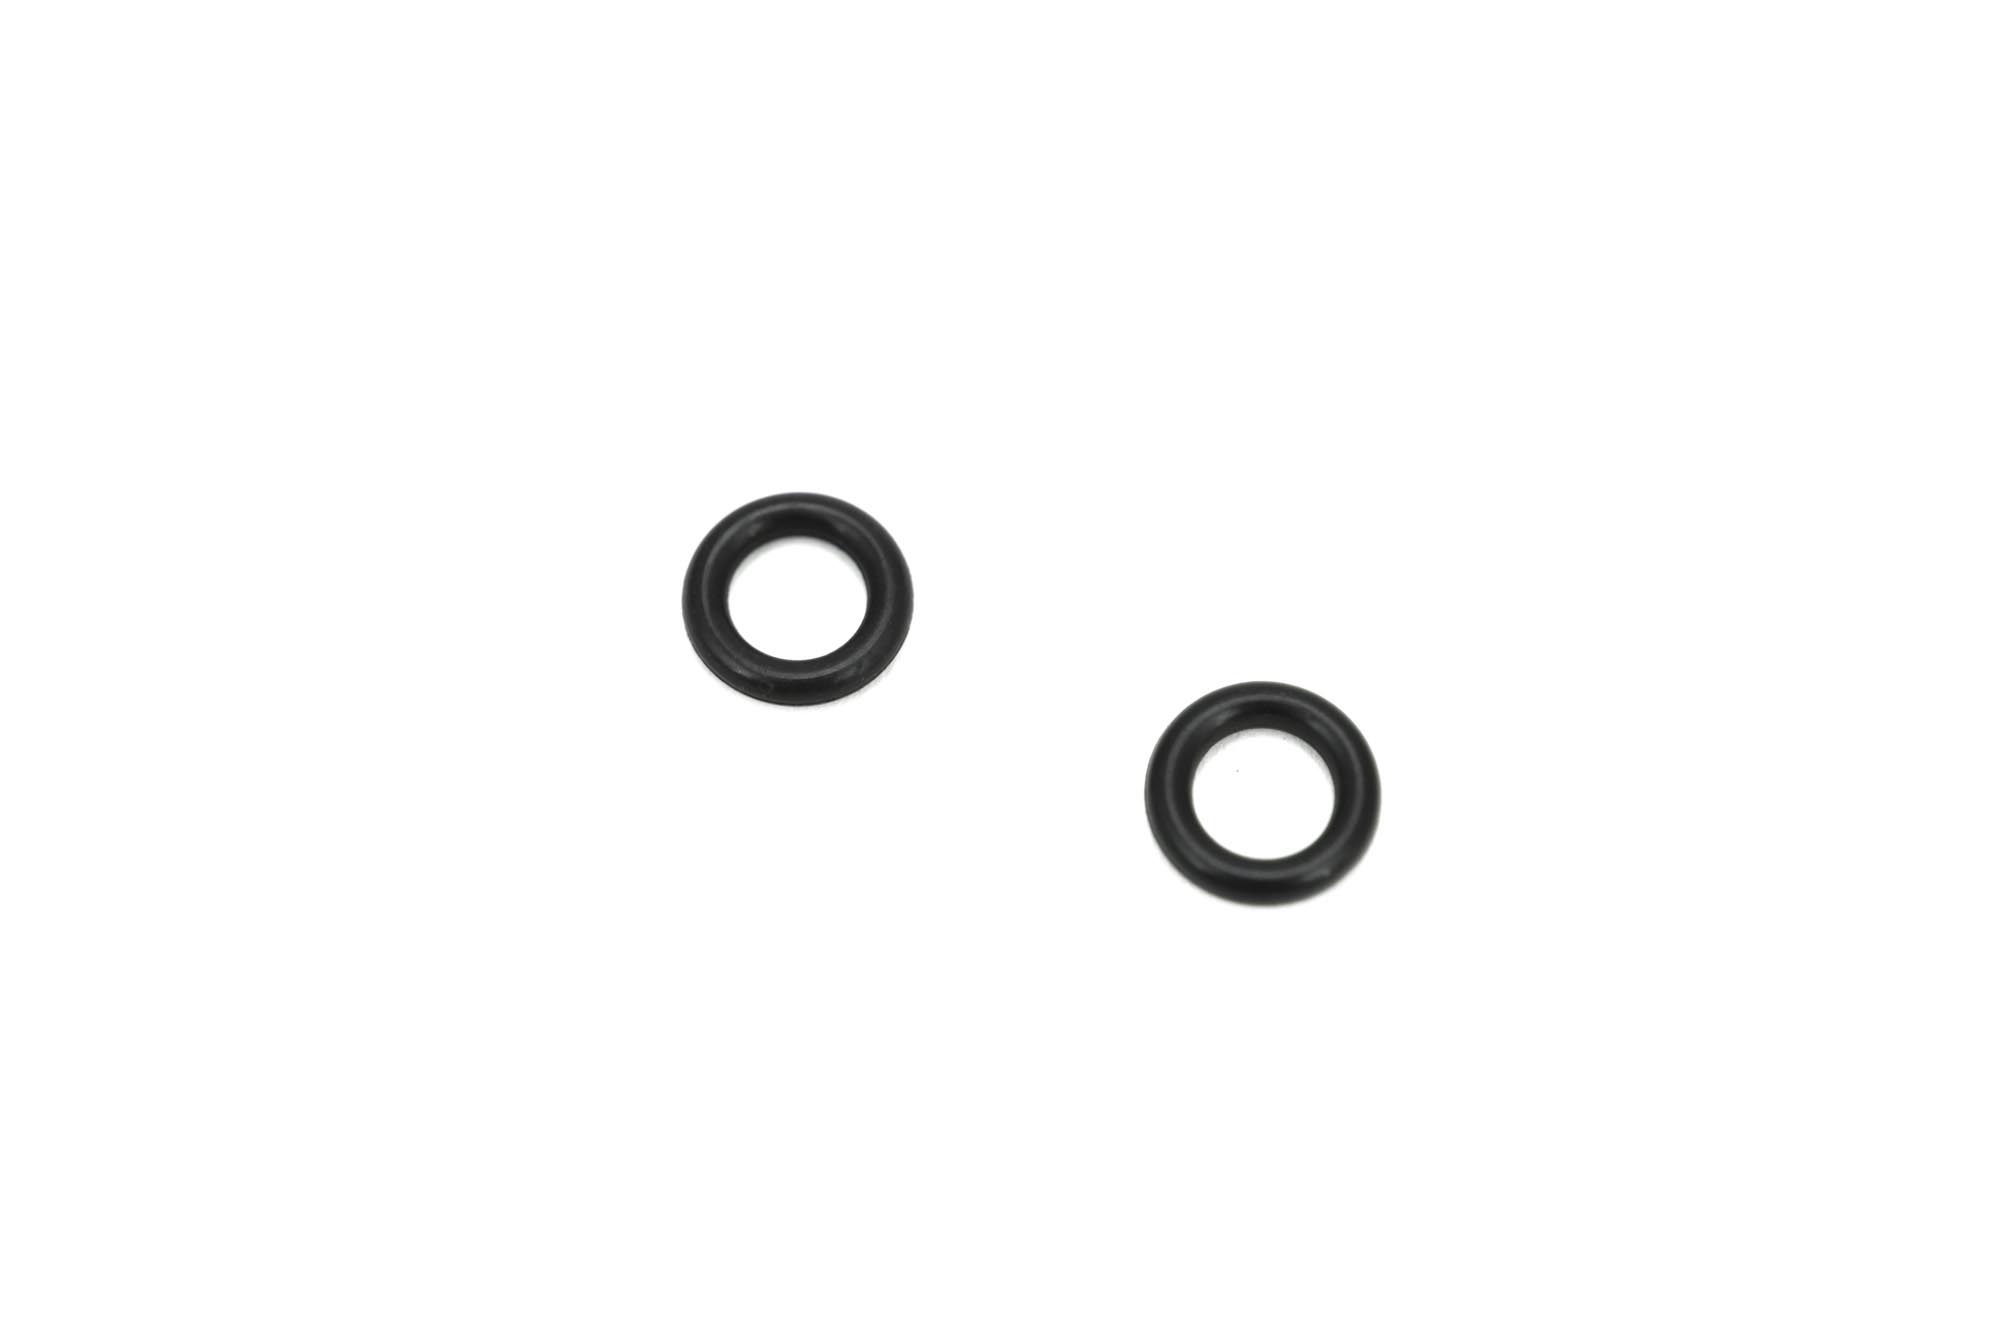 Bilde av store o-ring seler for splitter forlengelse og boble teller